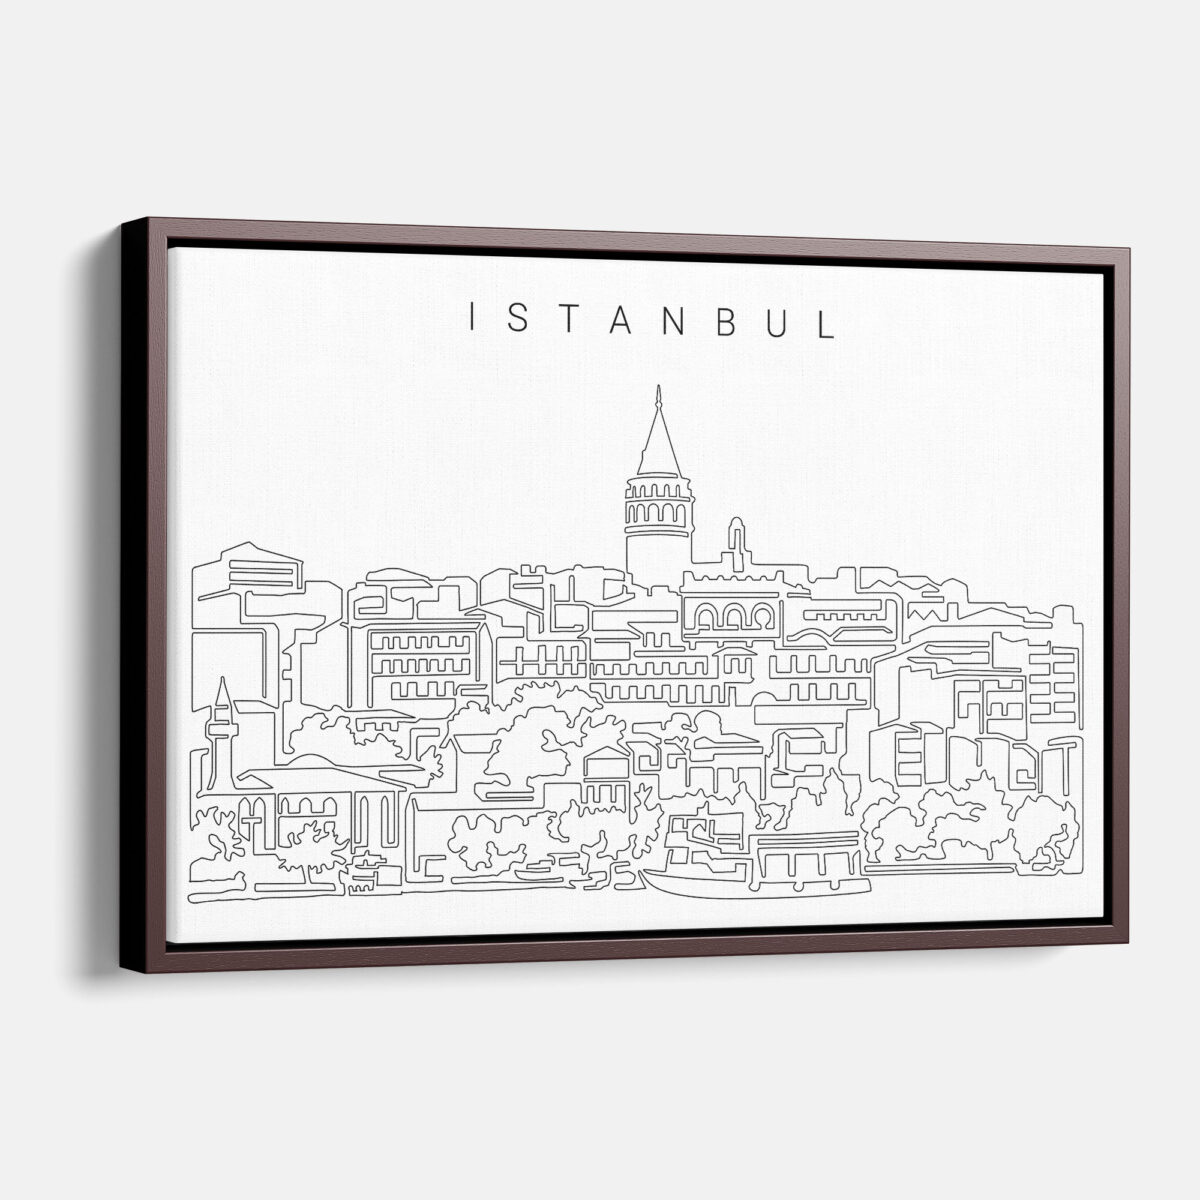 Framed Istanbul Canvas Print - Main - Light